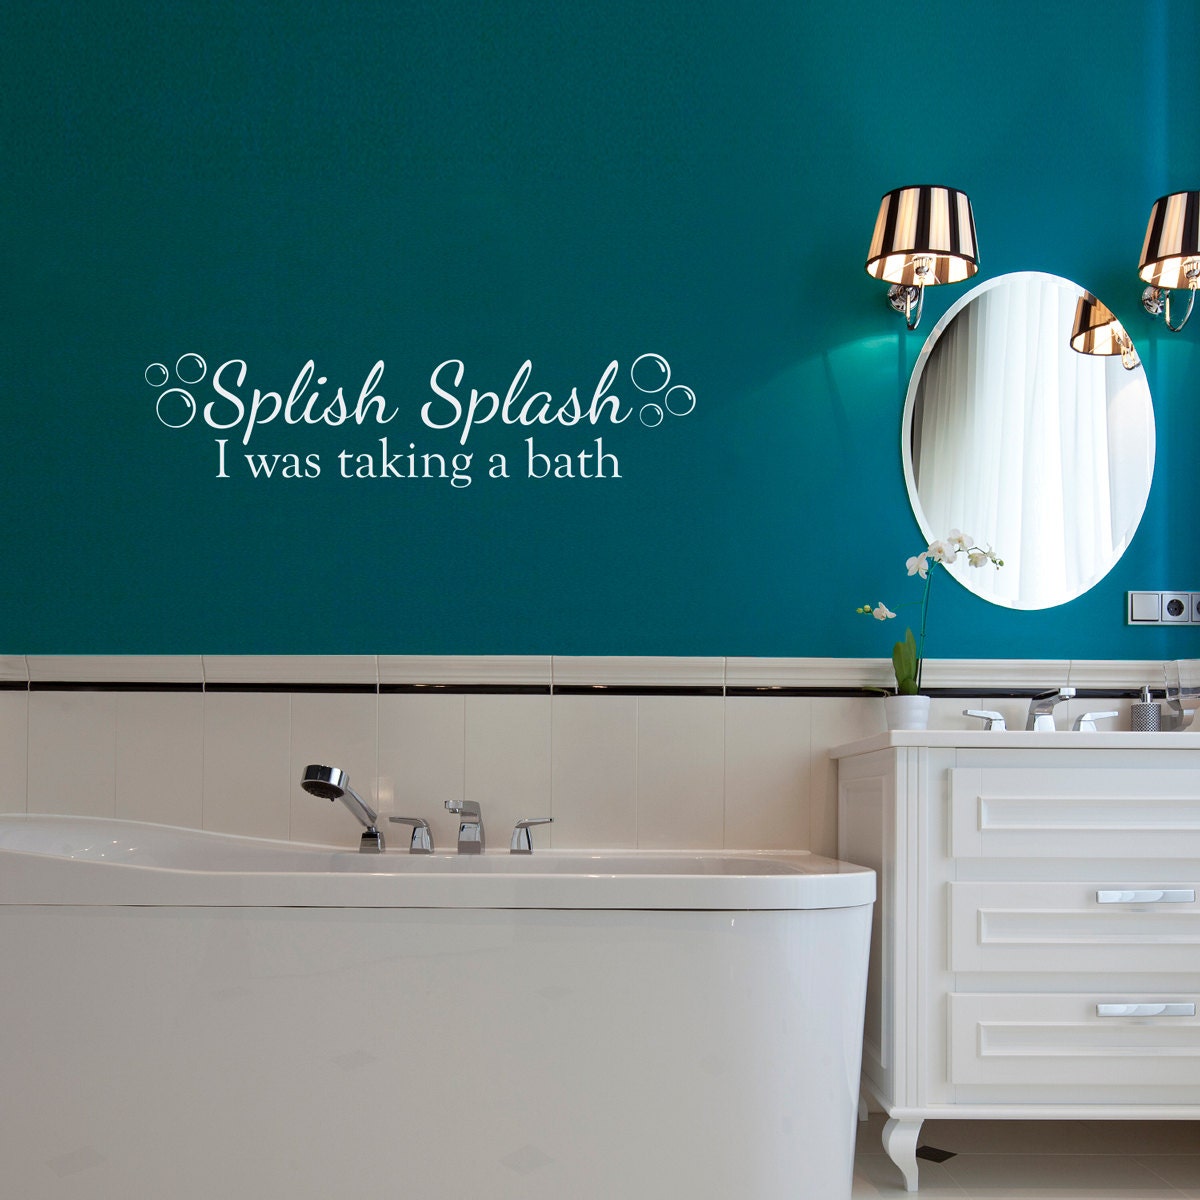 Splish Splash Wall Decal with bubbles - I was taking a bath decal - Bathroom Wall Decal